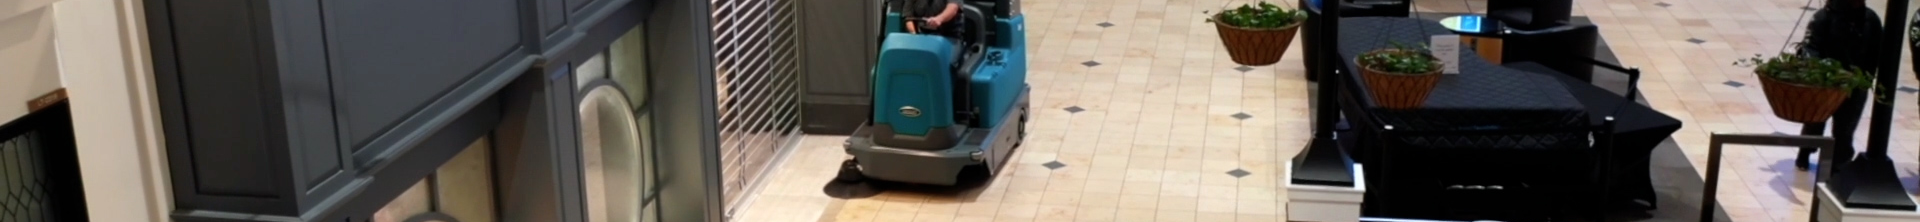 Barredora de conductor sentado Tennant S16 limpiando un aeropuerto